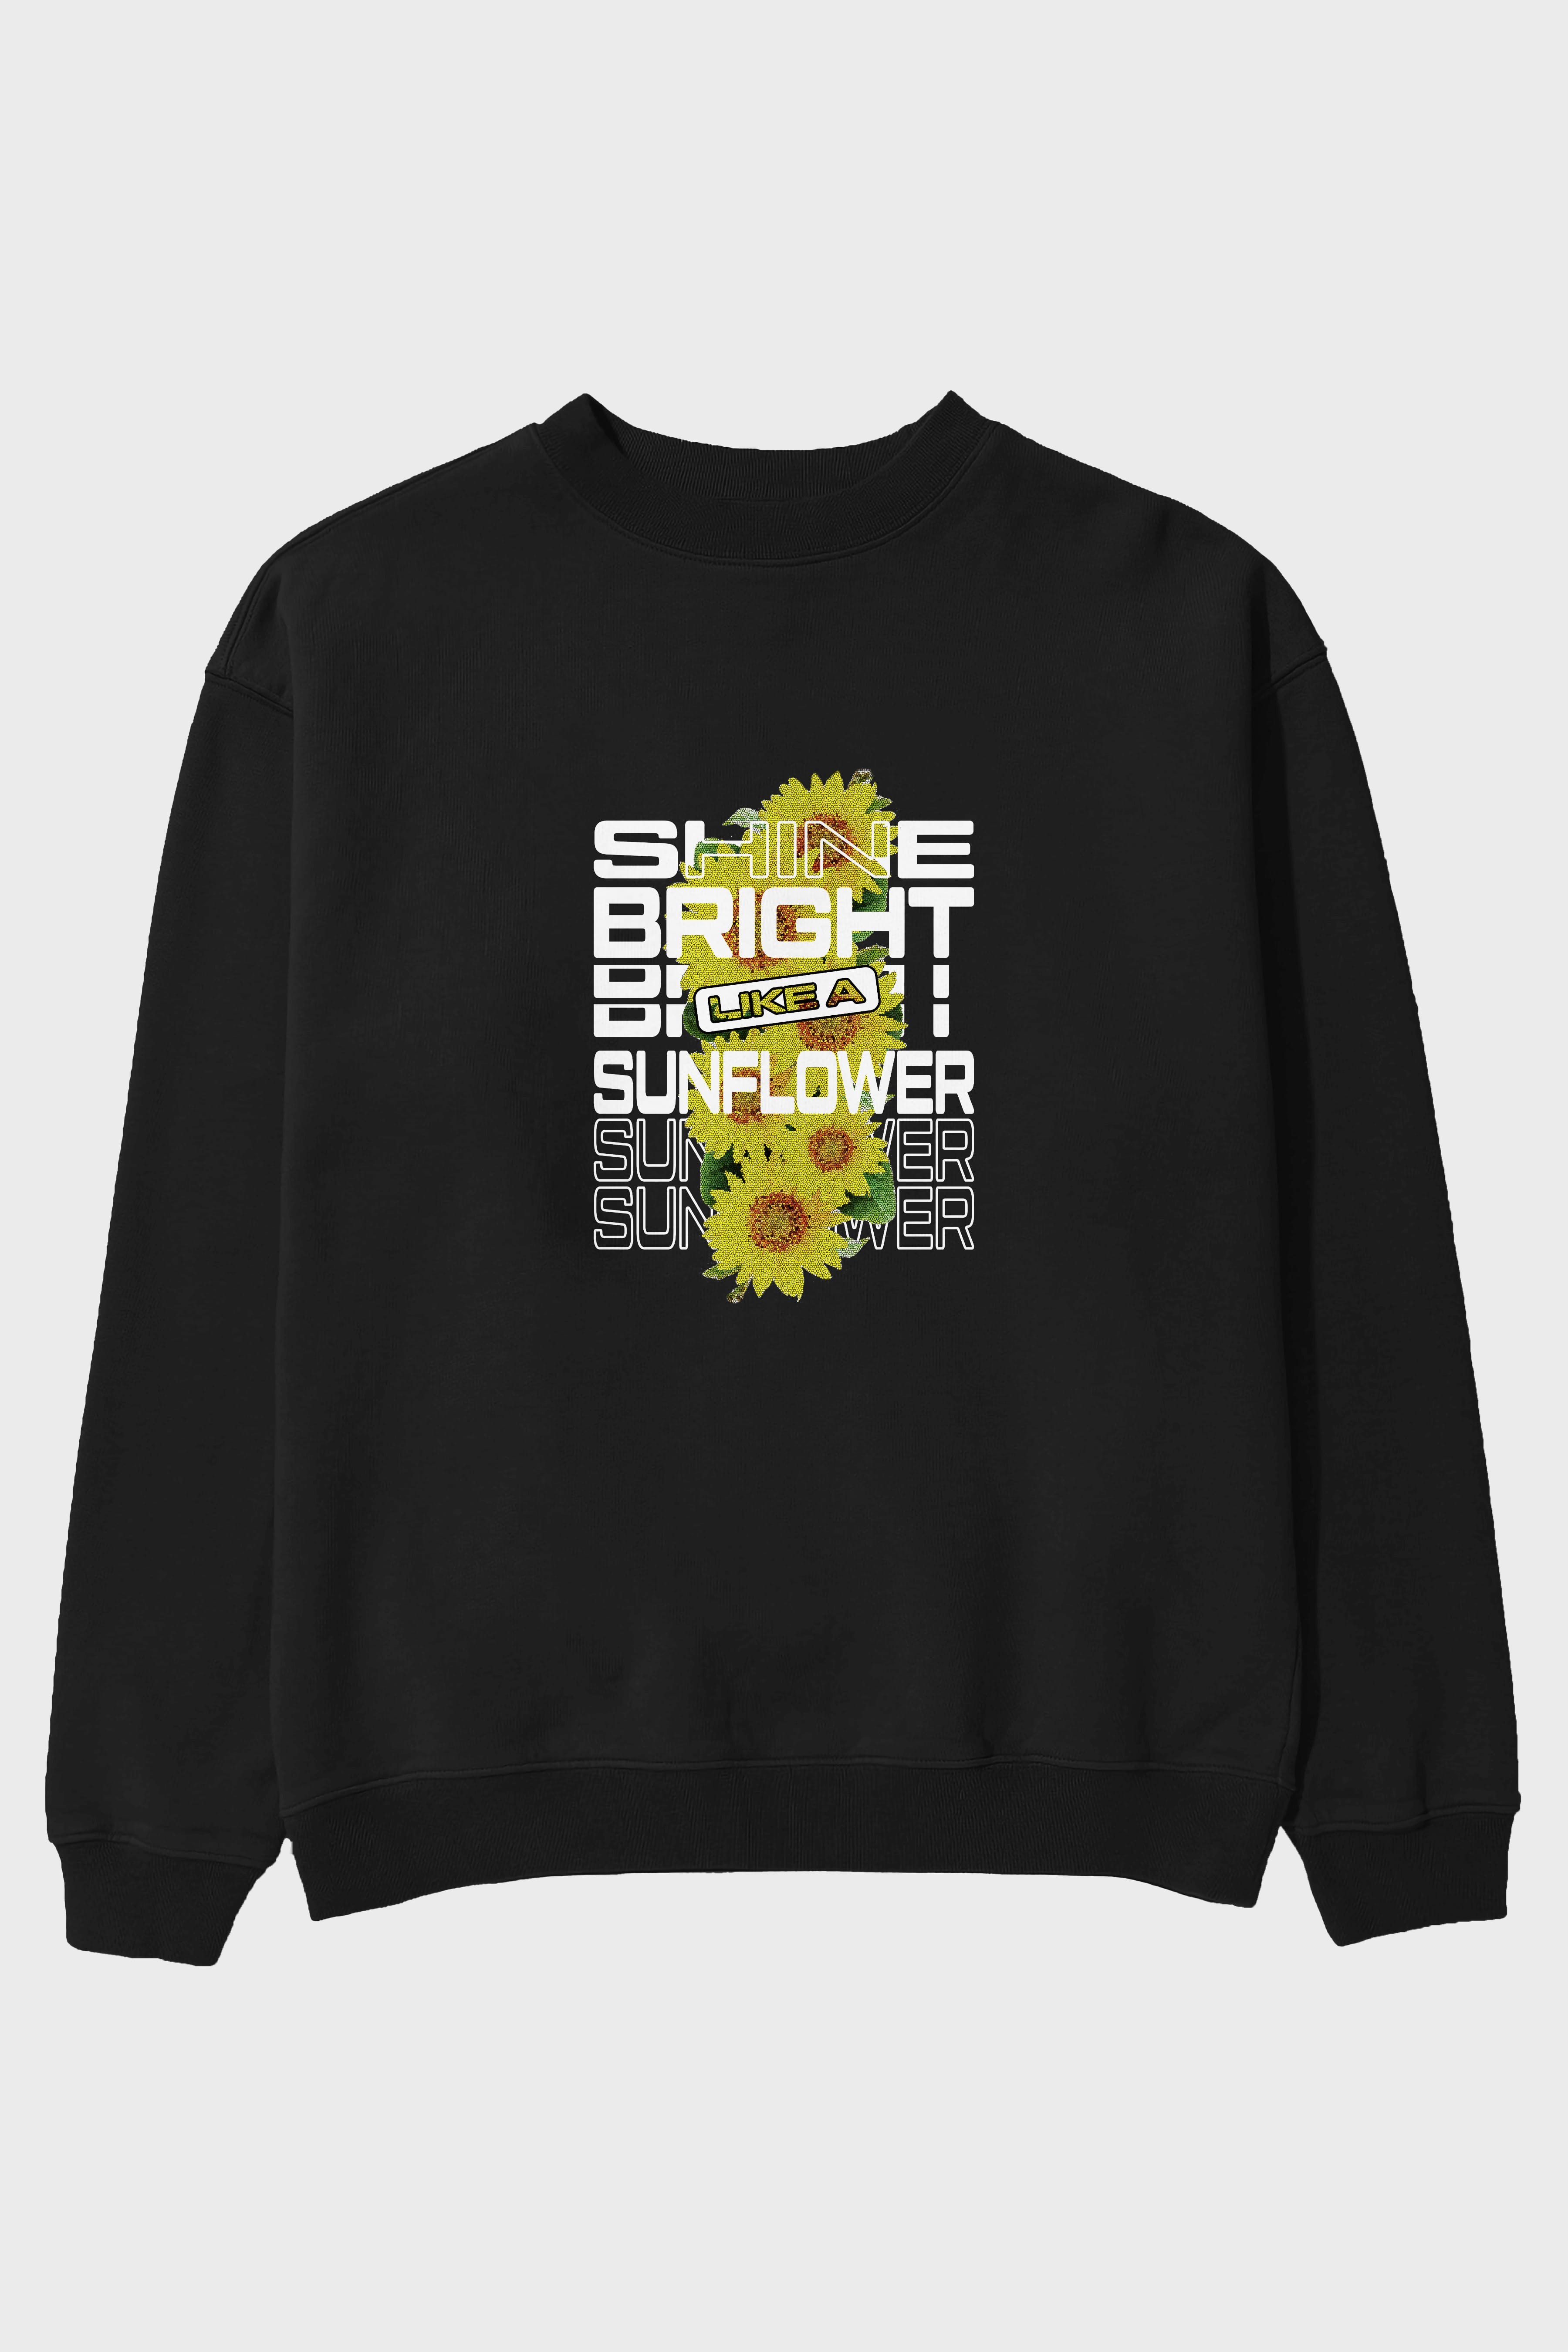 Shine bright like a sunflower Ön Baskılı Oversize Sweatshirt Erkek Kadın Unisex